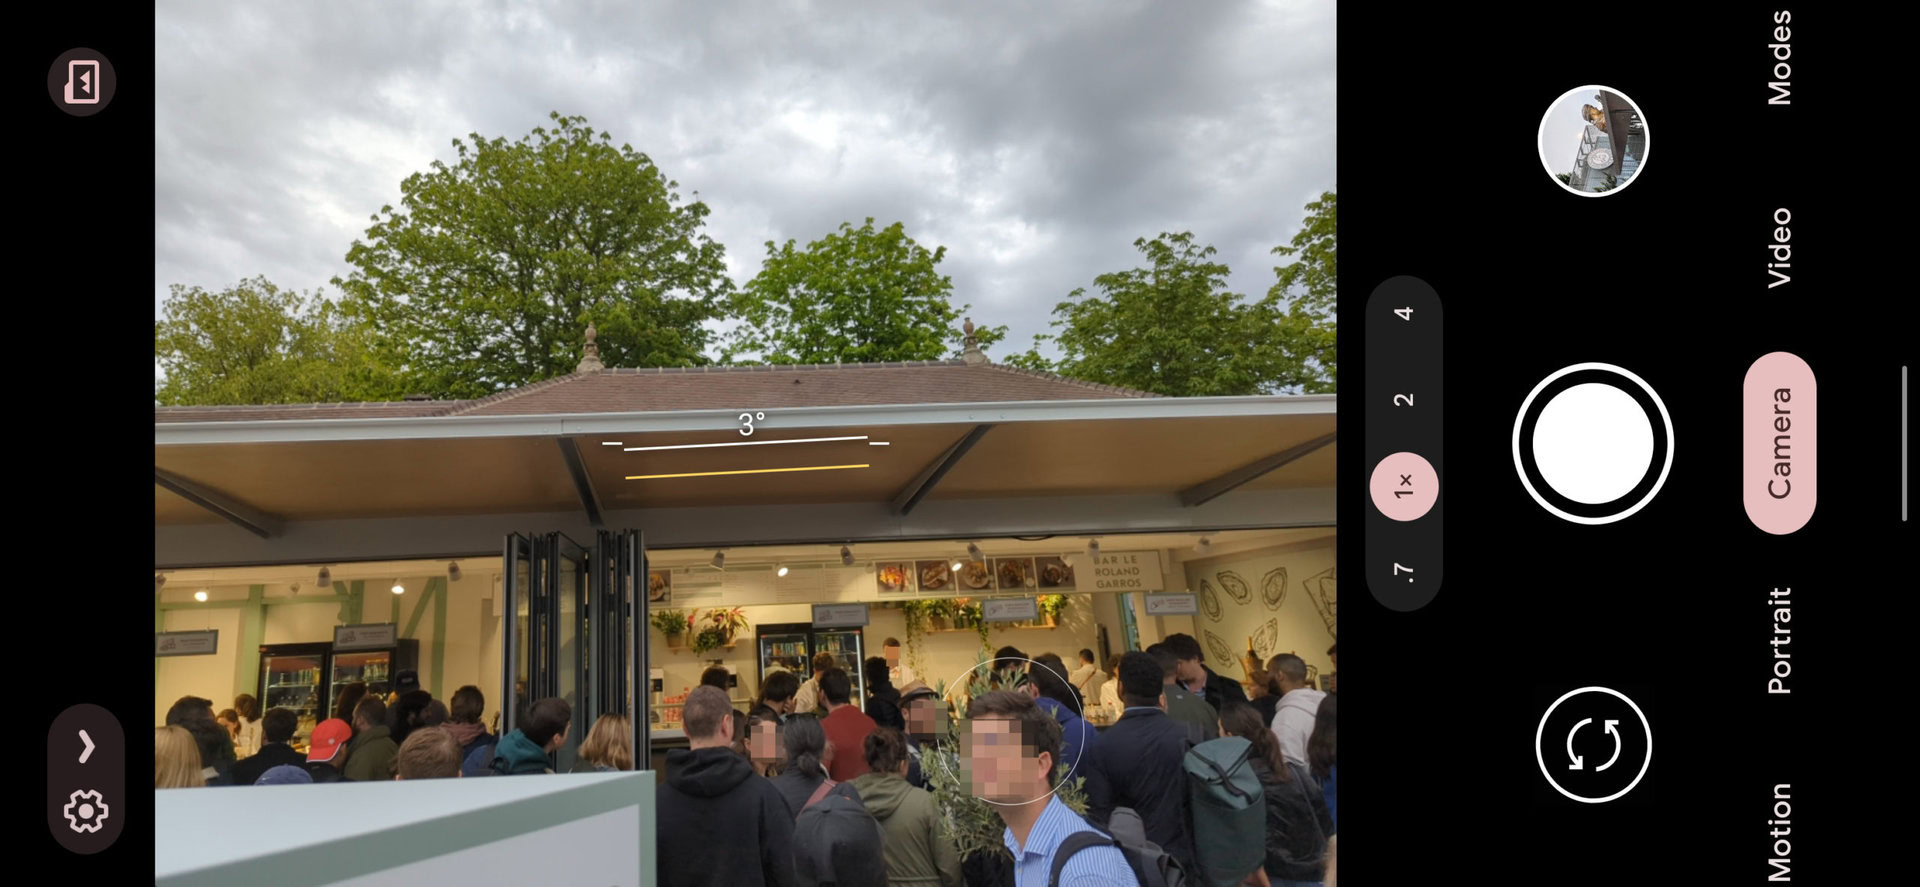 谷歌 Pixel 6 Pro 1x 摄像头截图显示了一家排长队的食品店